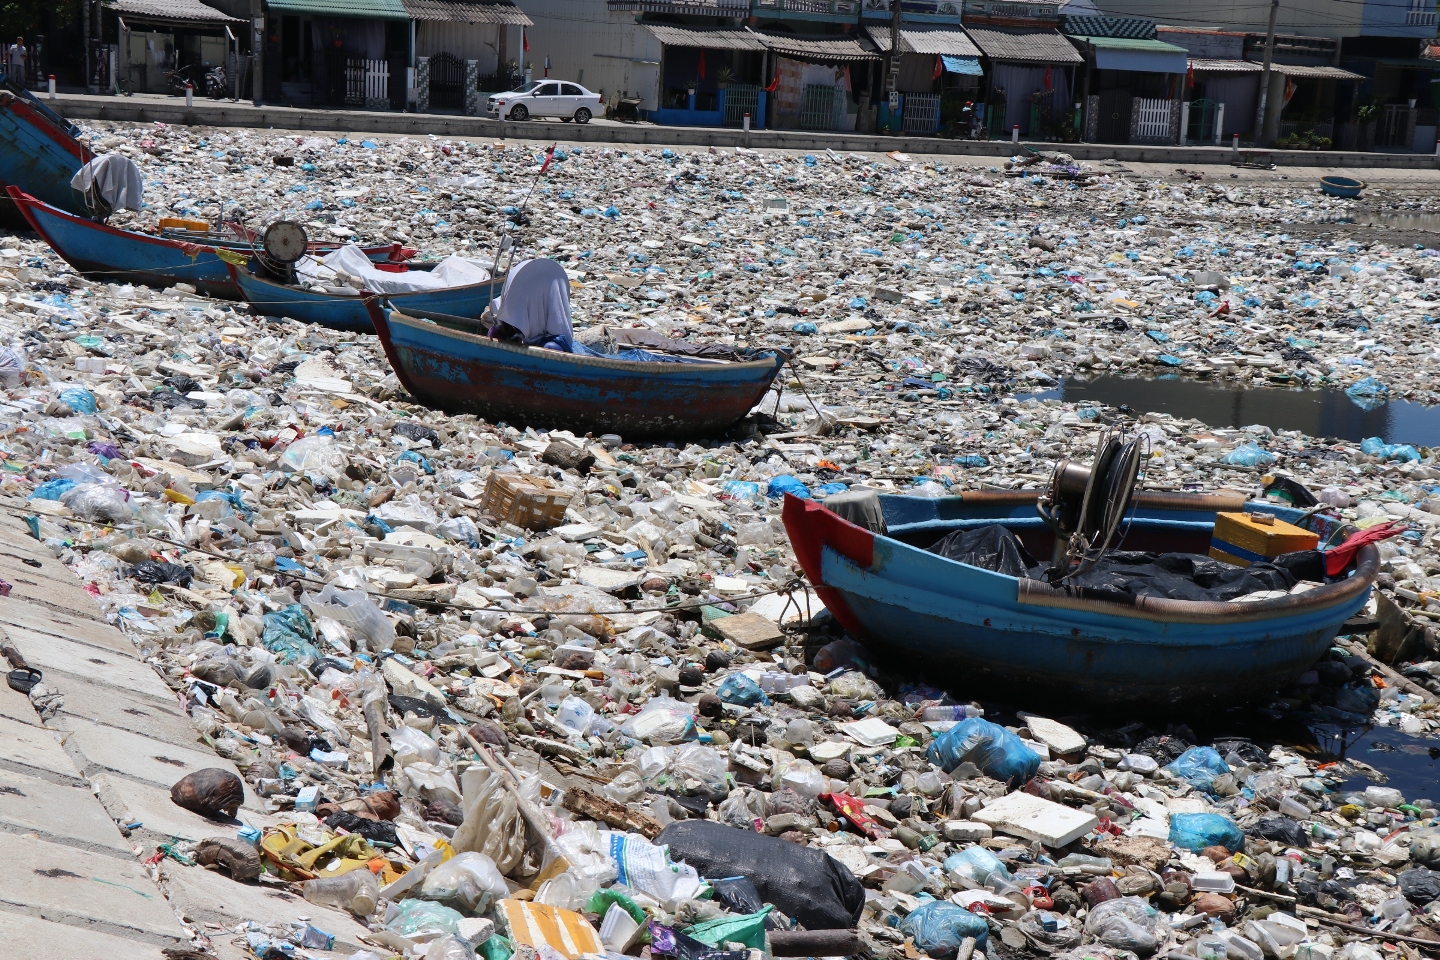 Không có nơi xử lý, nhiều tấn rác thải ở đầm nước mặn Sa Huỳnh tồn đọng nhiều năm qua. Ảnh: Ngọc Viên